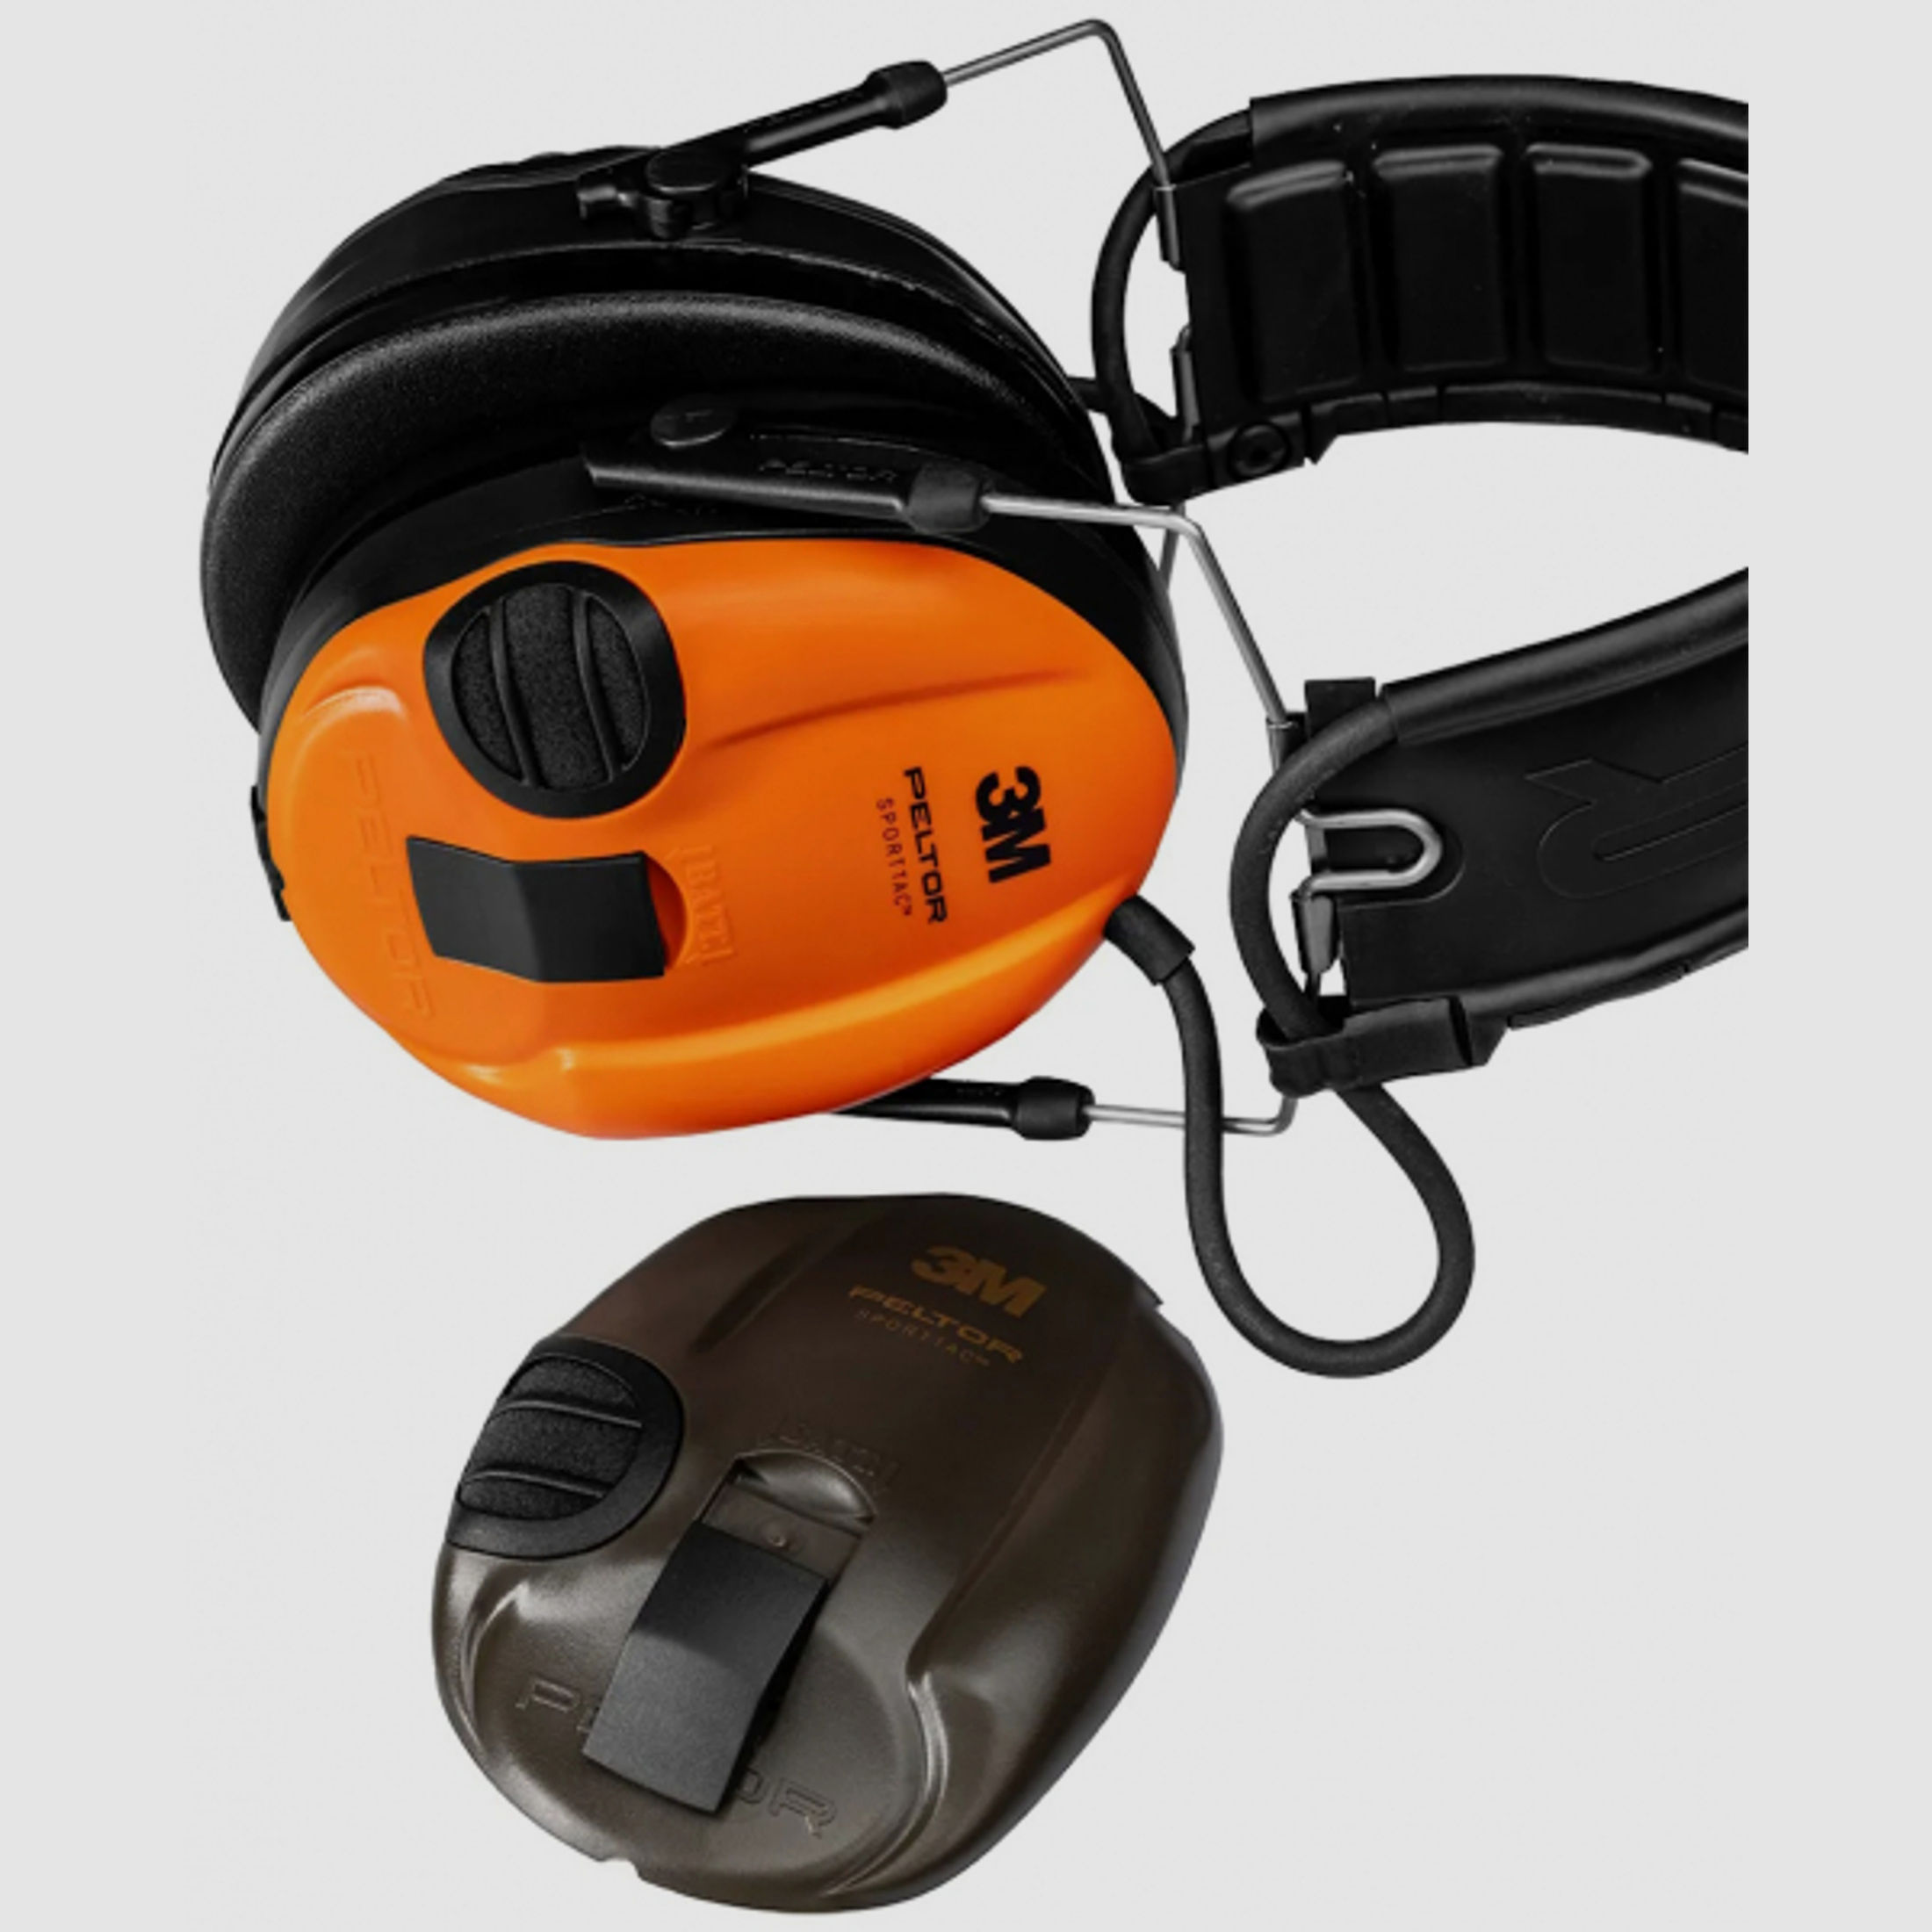 3M Peltor SporTac Kapselgehörschützer - Taktischer Gehörschutz - grün mit orangen Wechselkapseln